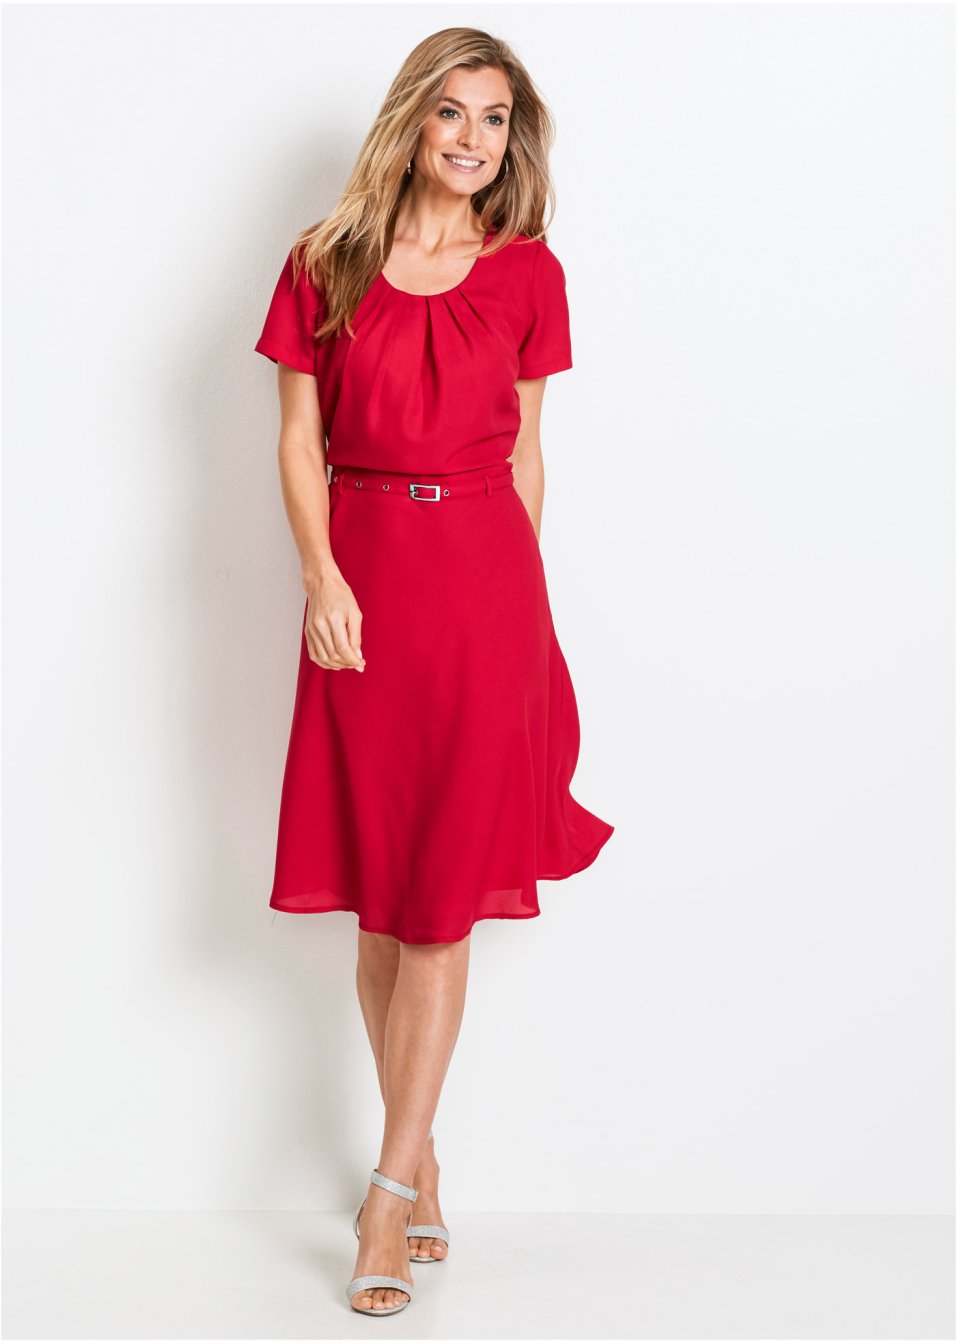 Kleid rot - Damen - bpc selection - bonprix.ch